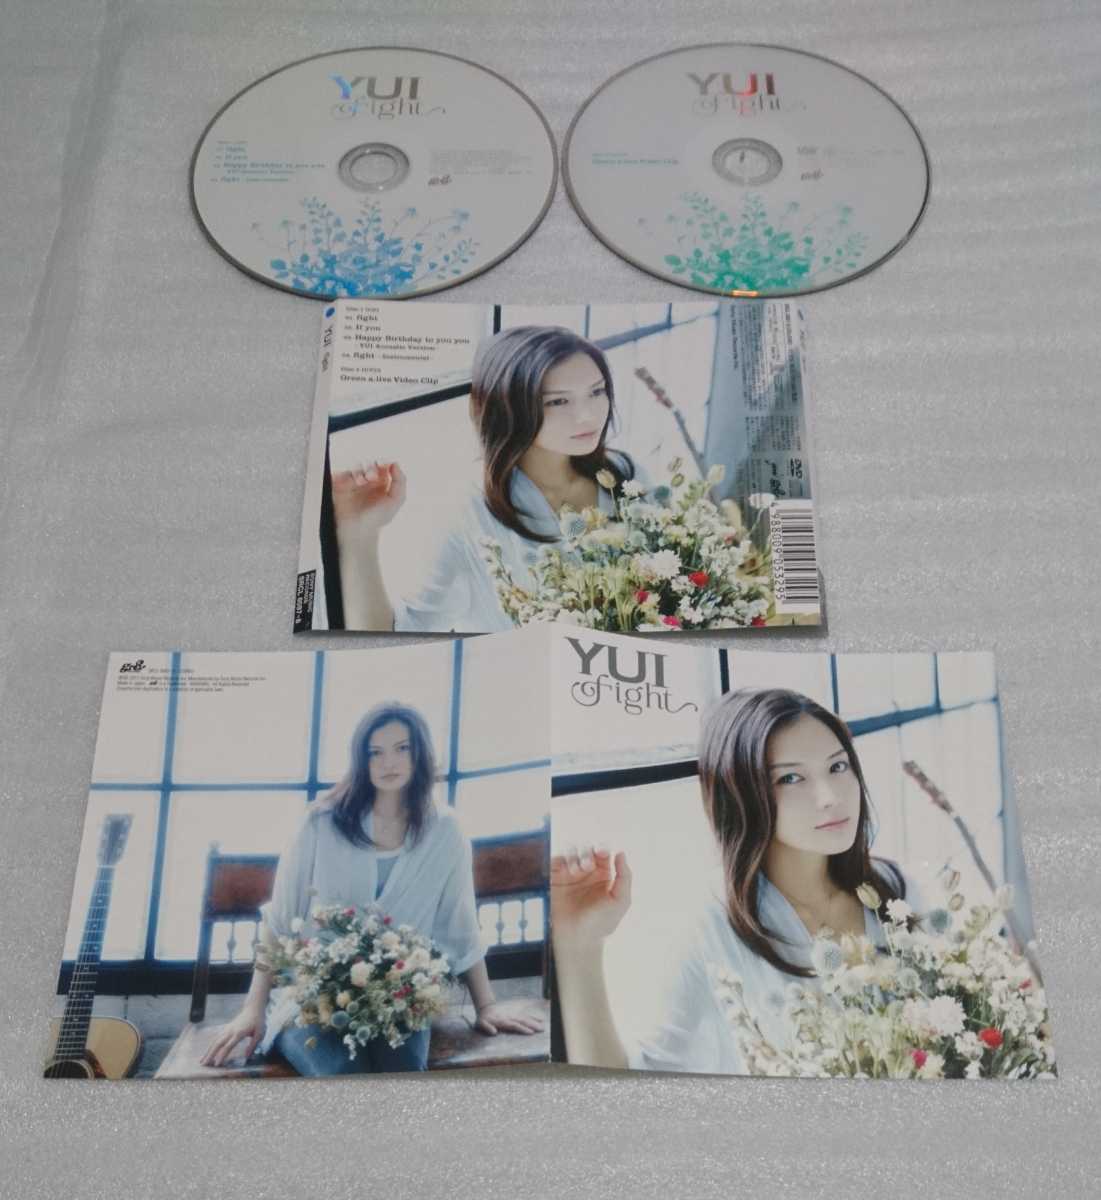 未開封含YUI初回限定盤DVD付 シングル CD 3枚 映画主題歌バラード LOVE & TRUTH HELLO アコースティック収録 Green a.live NHKテーマ fight_※収納する袋は付けさせていただきます。